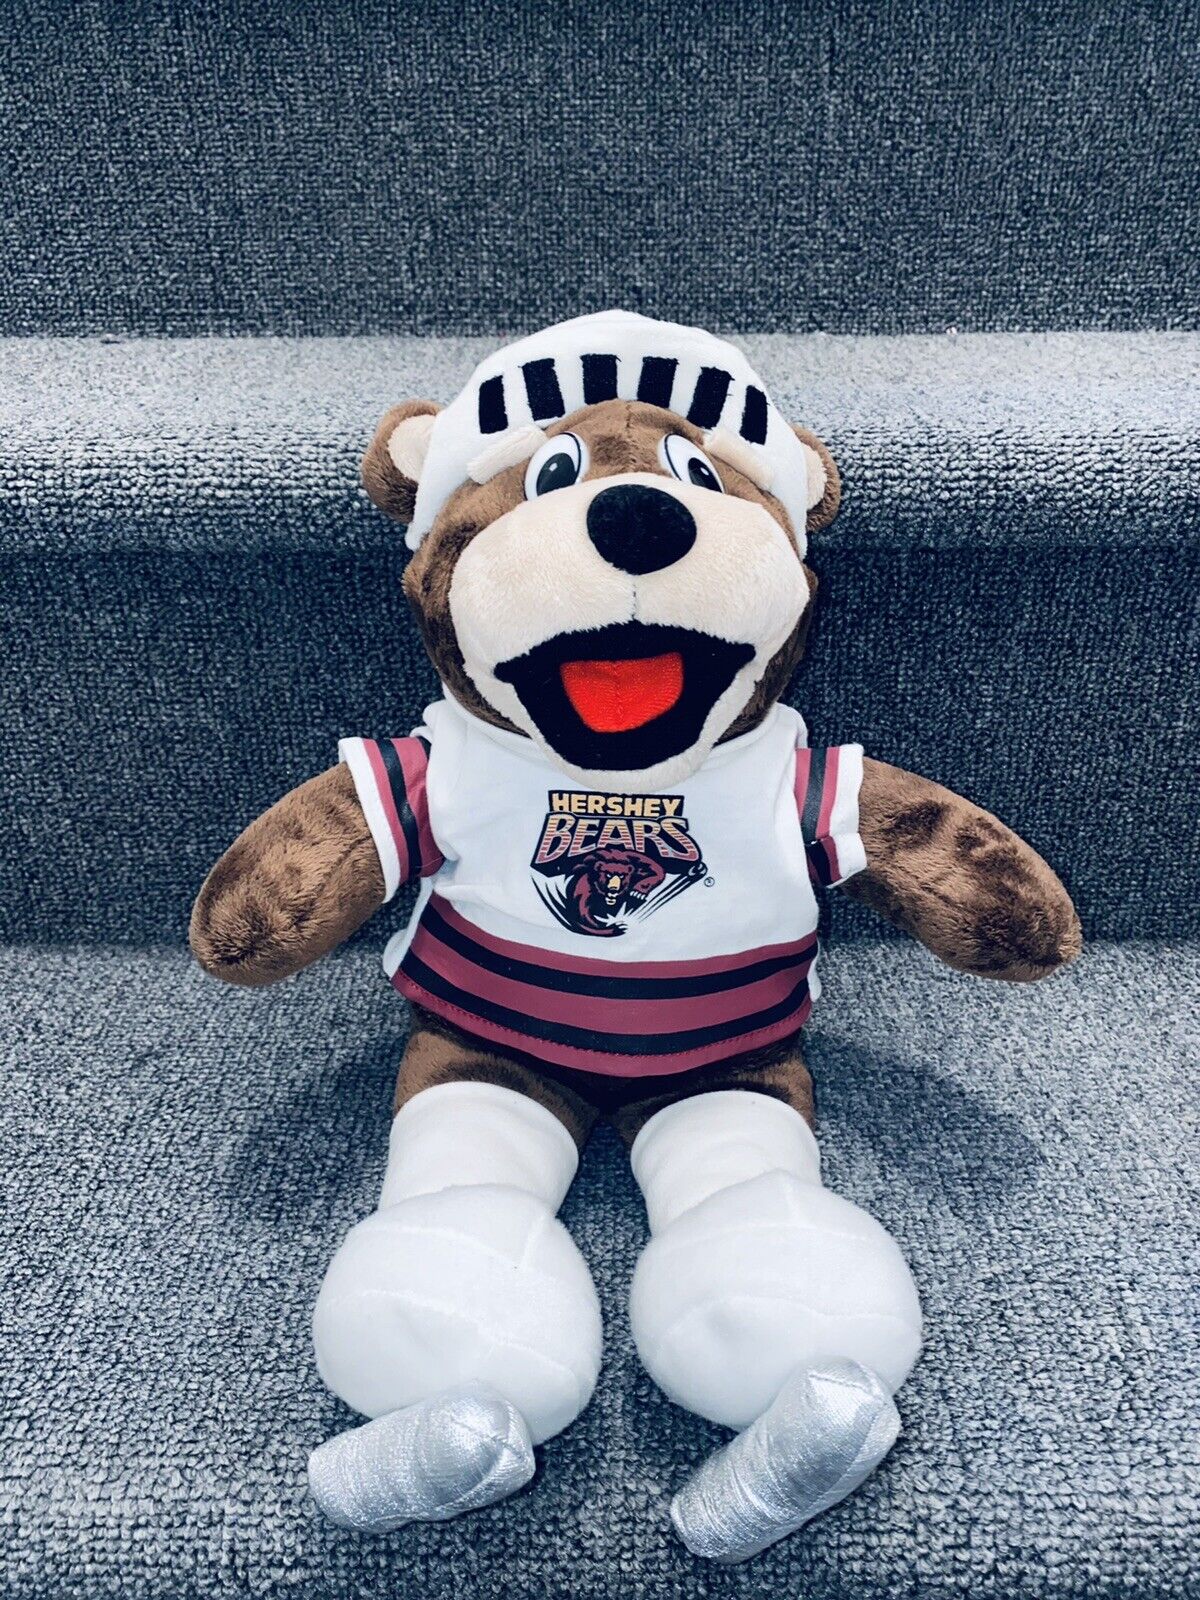 Hershey Bears Mascot Coco Plush Plushie Rare Ice Skating Hockey Stuffed  Animal | eBay